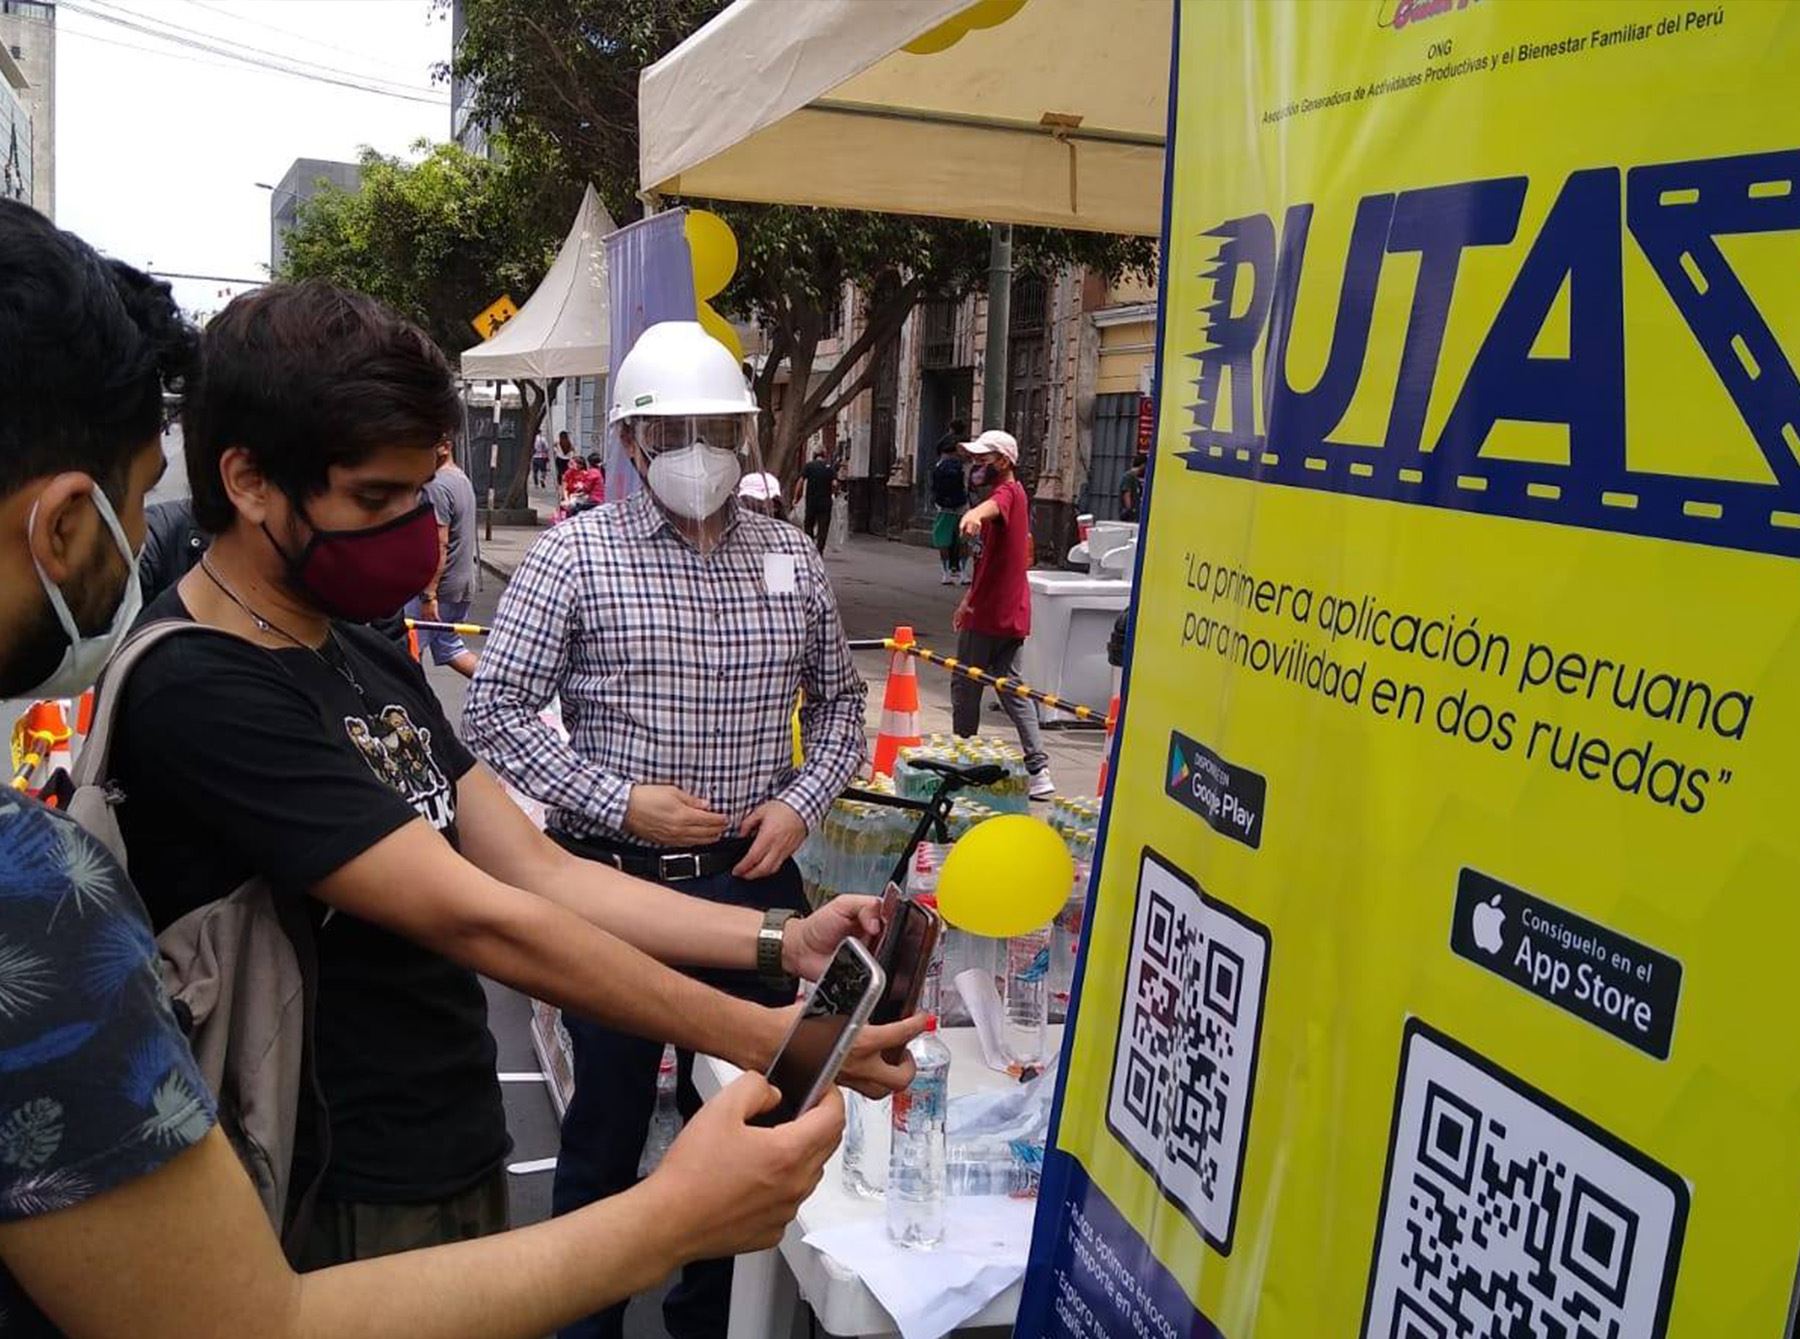 La aplicación móvil Rutaz  indica el camino óptimo priorizando ciclovías